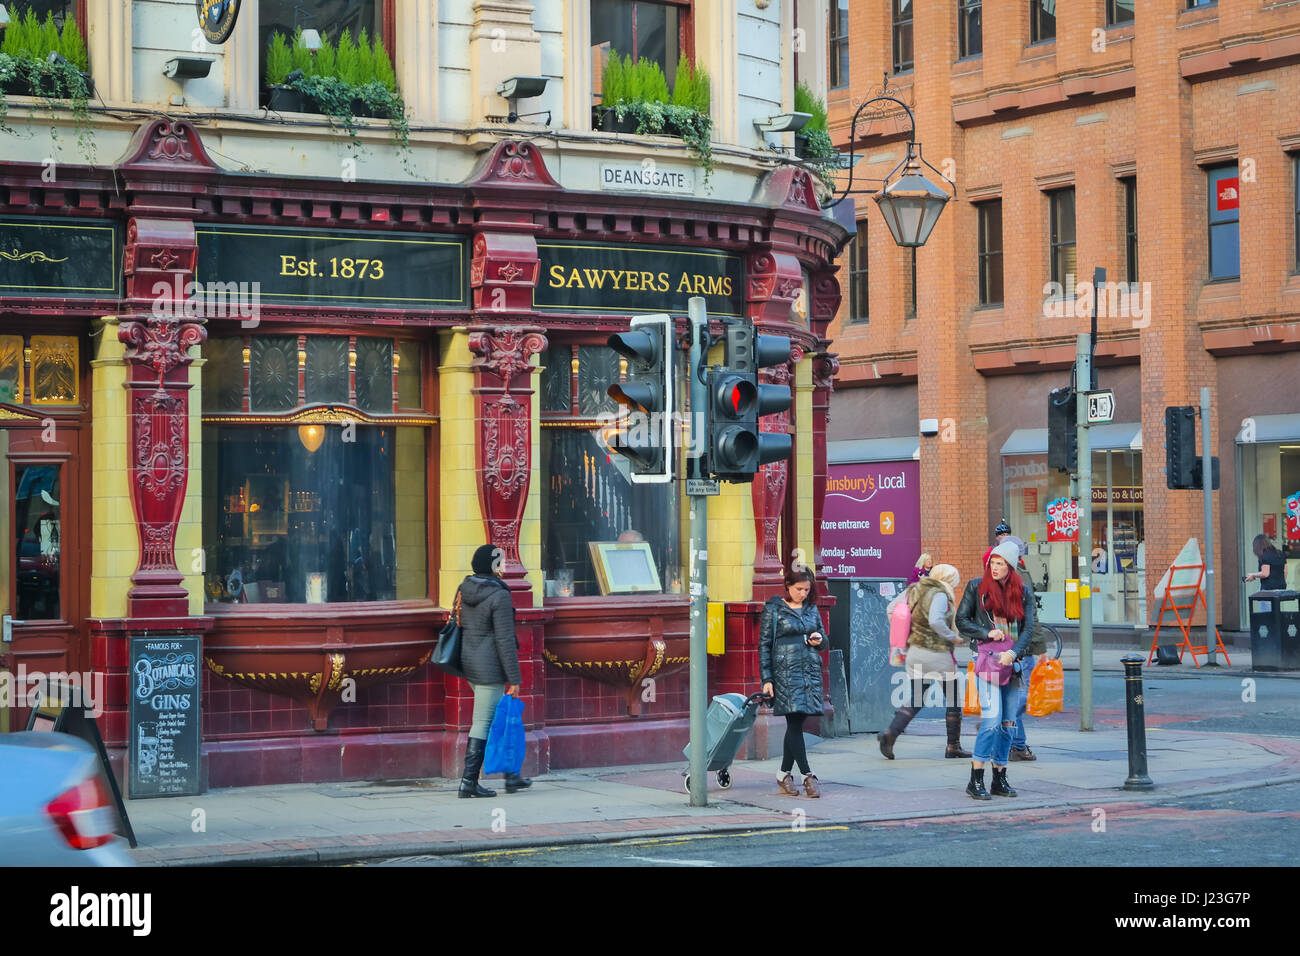 Straße mit der historischen Säger Arms Pub und Frau mit roten Haaren, die die Straße überqueren, Manchester, UK Stockfoto